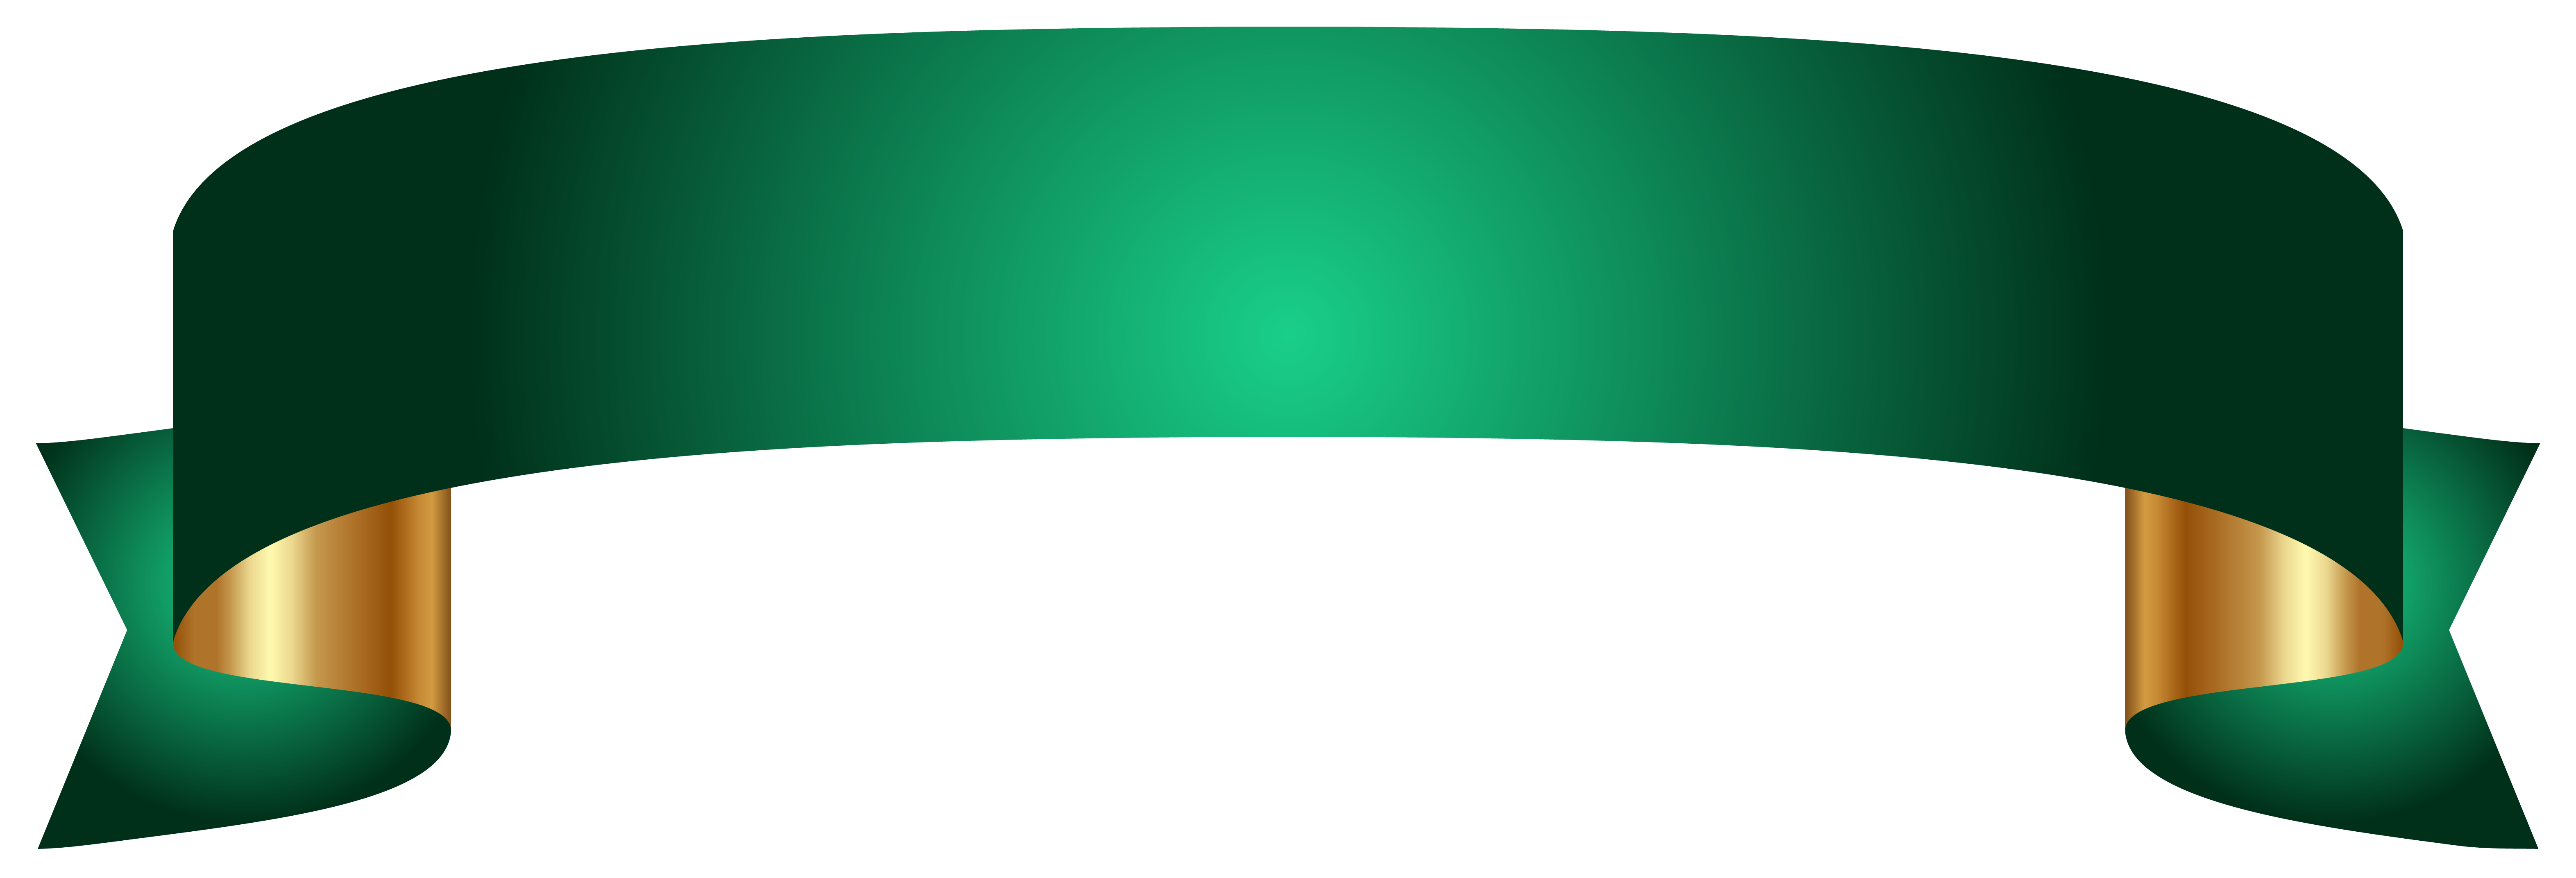 Зеленый баннер PNG картина